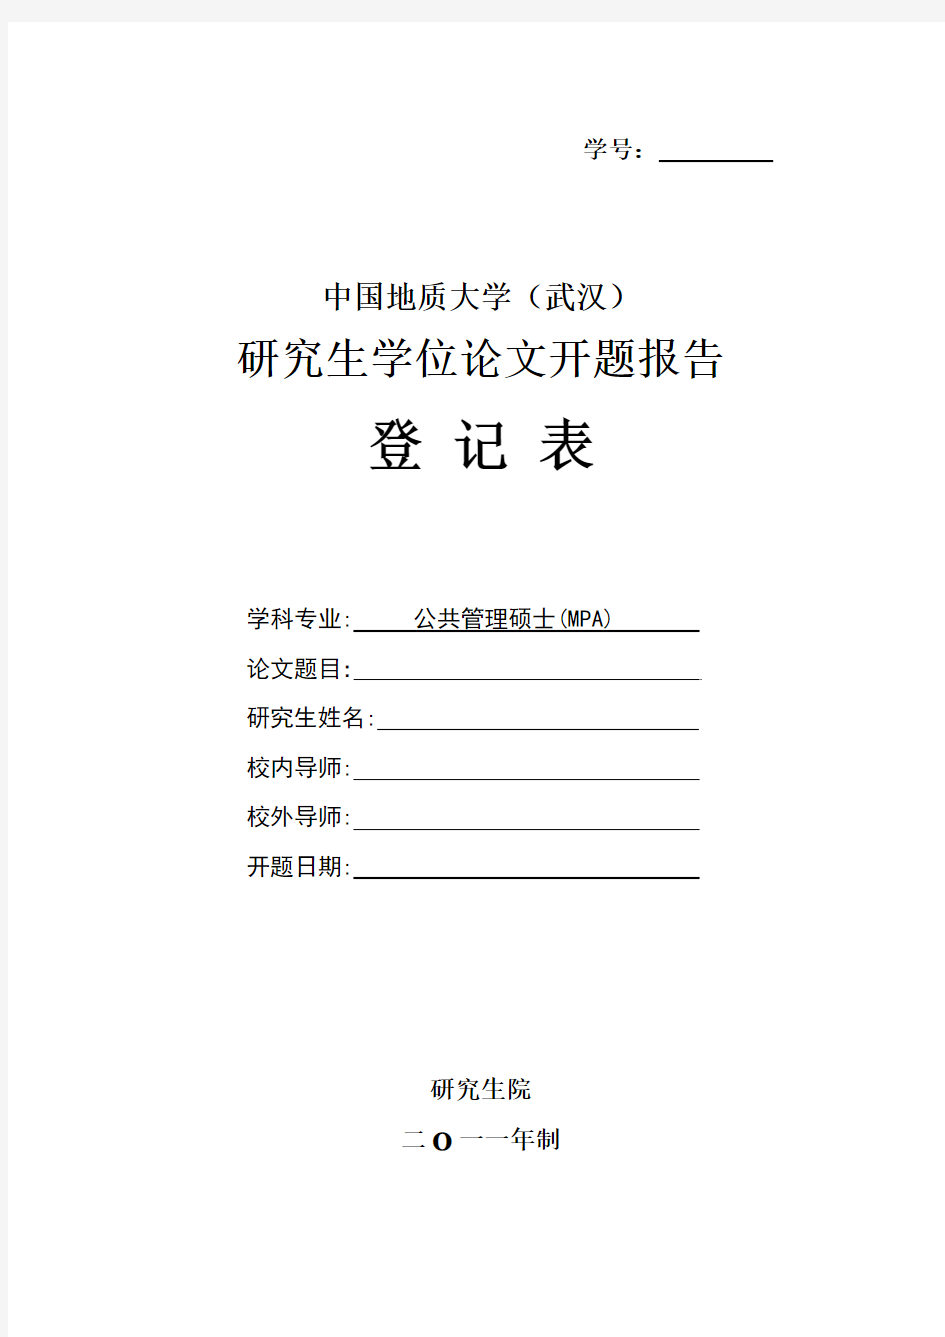 中国地质大学 研究生学位论文开题报告登记表